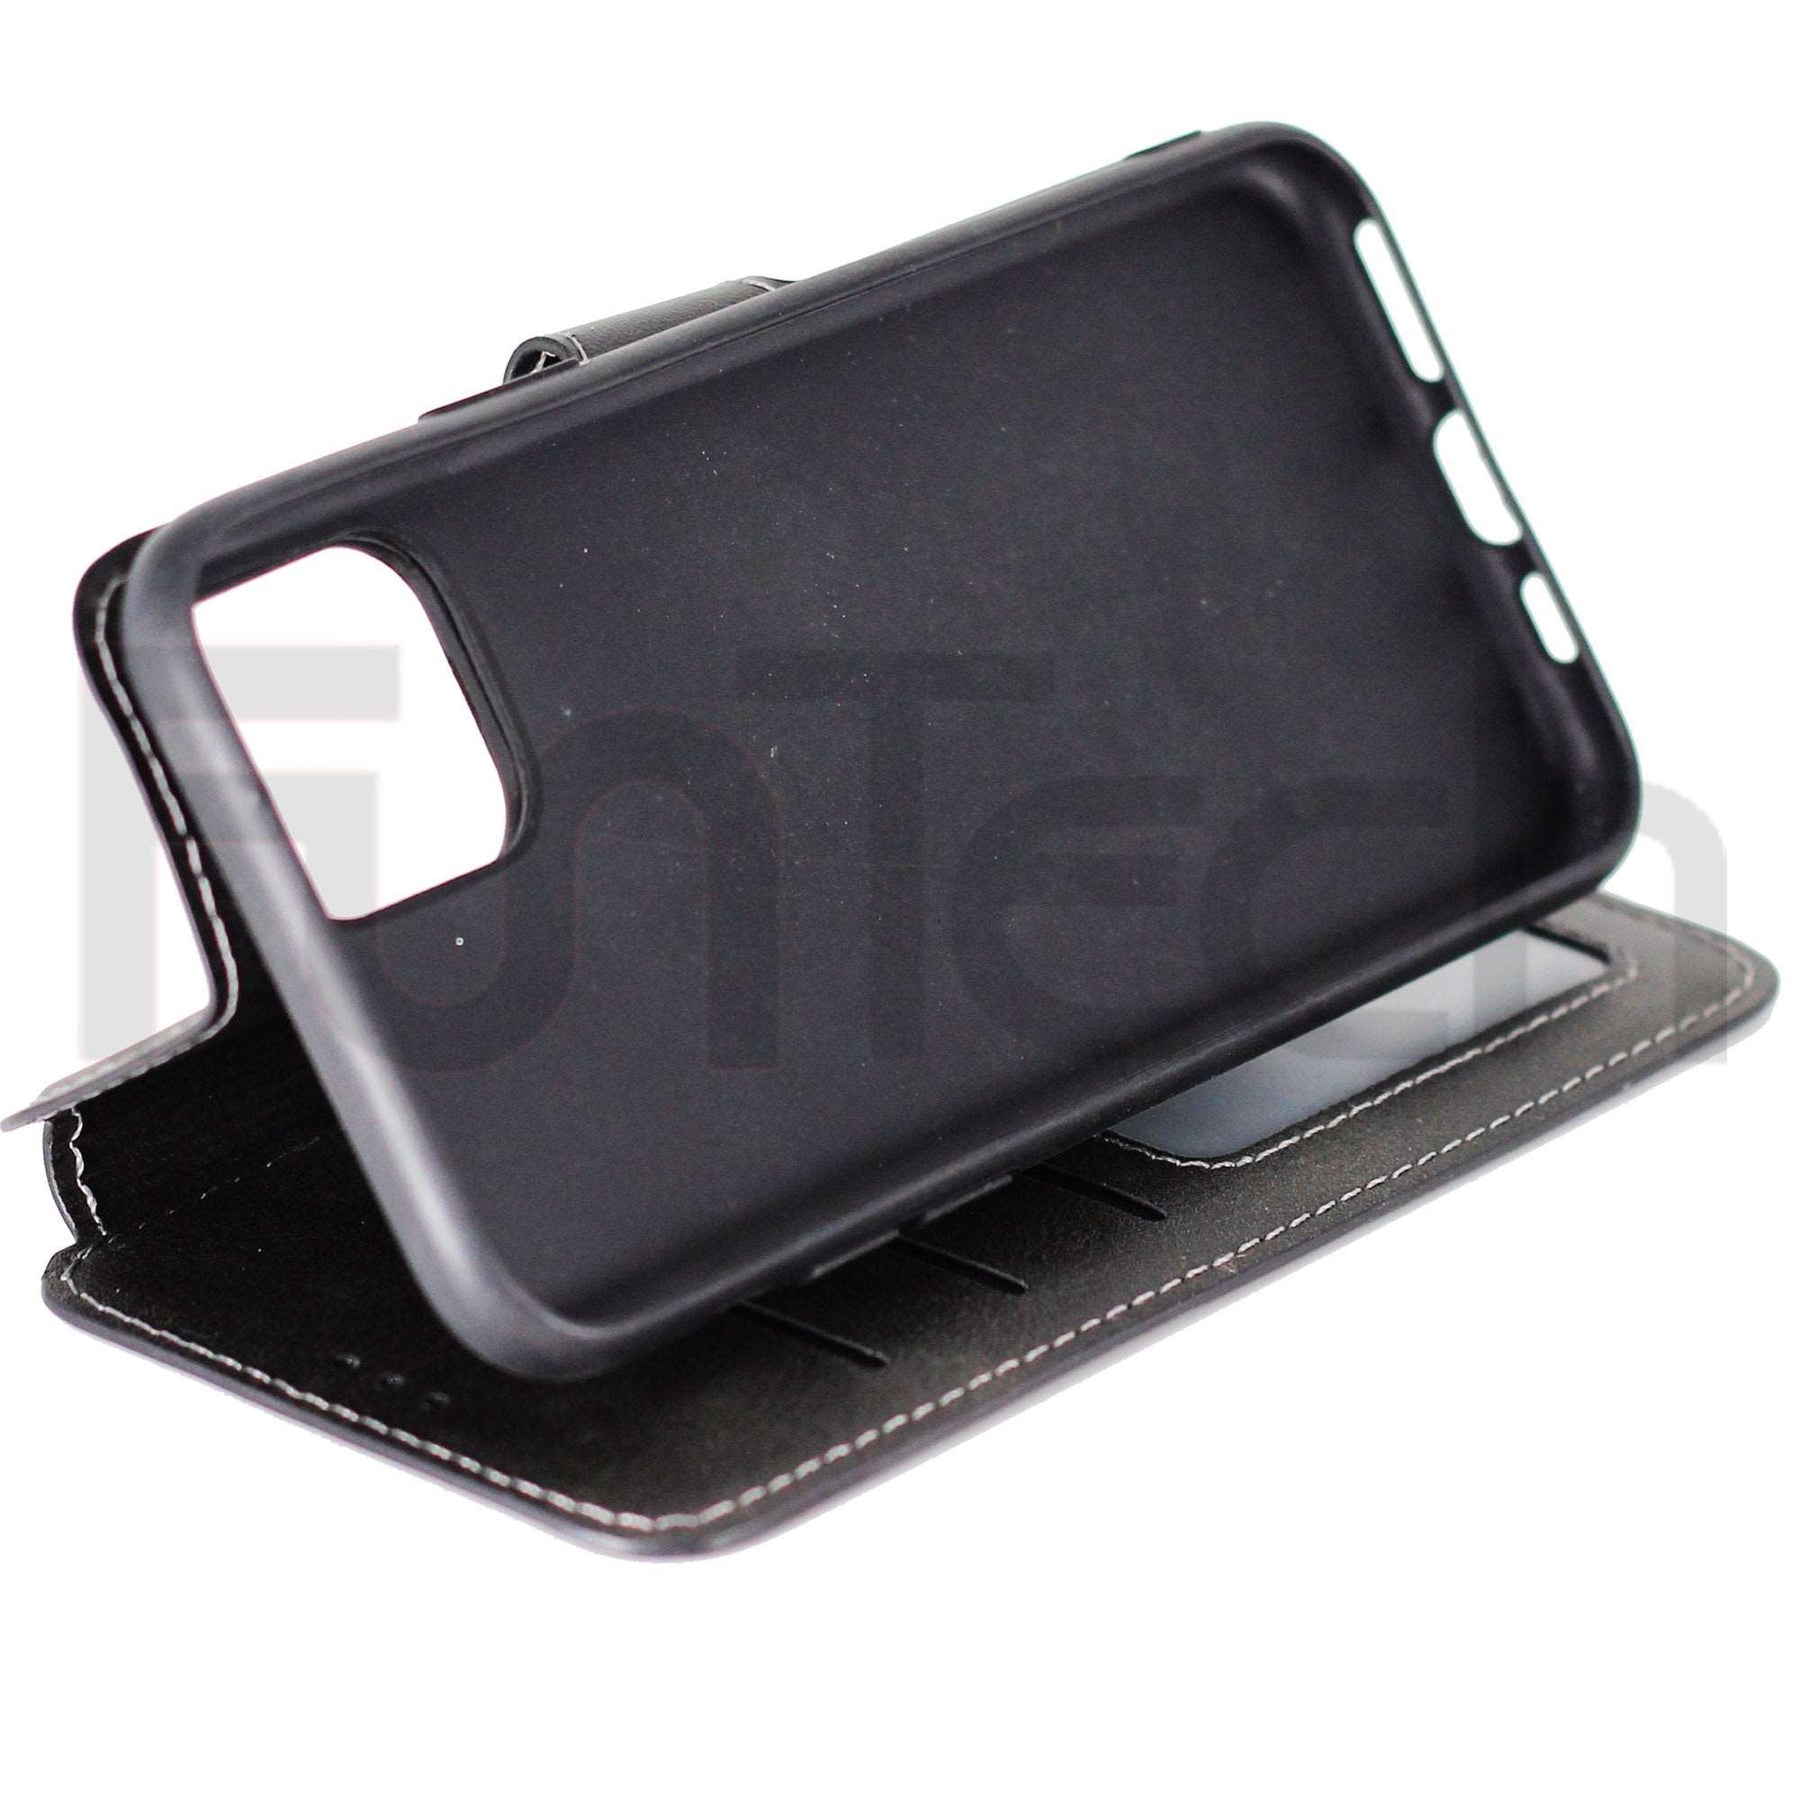 Apple iPhone 11 Pro Premium Leather Case Black